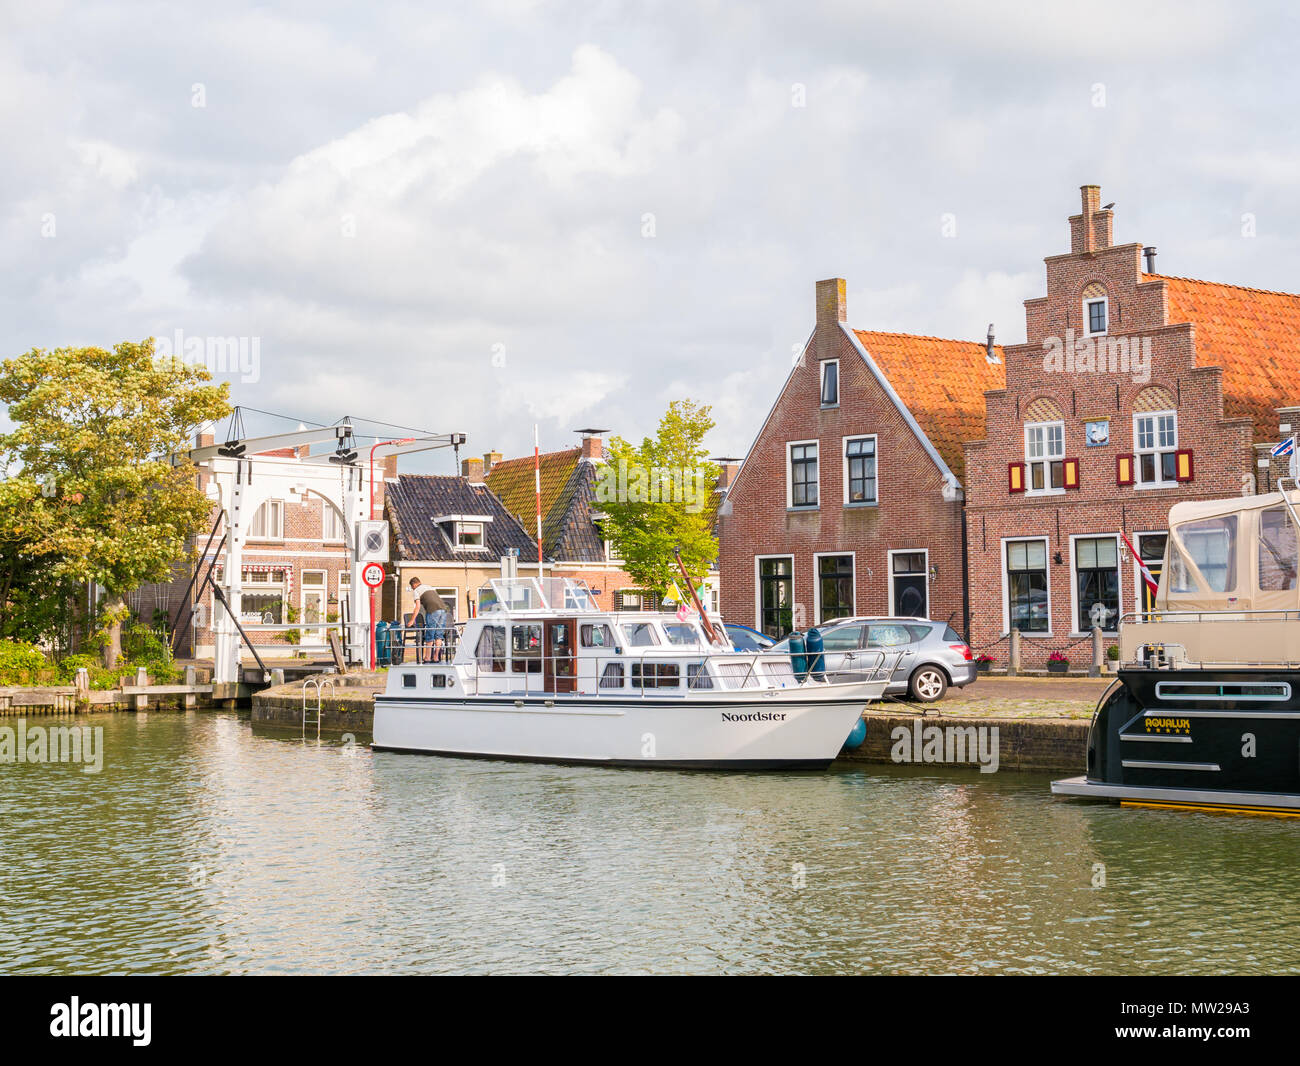 Barca in porto, ponte levatoio e case storiche nella città vecchia di Makkum, Friesland, Paesi Bassi Foto Stock